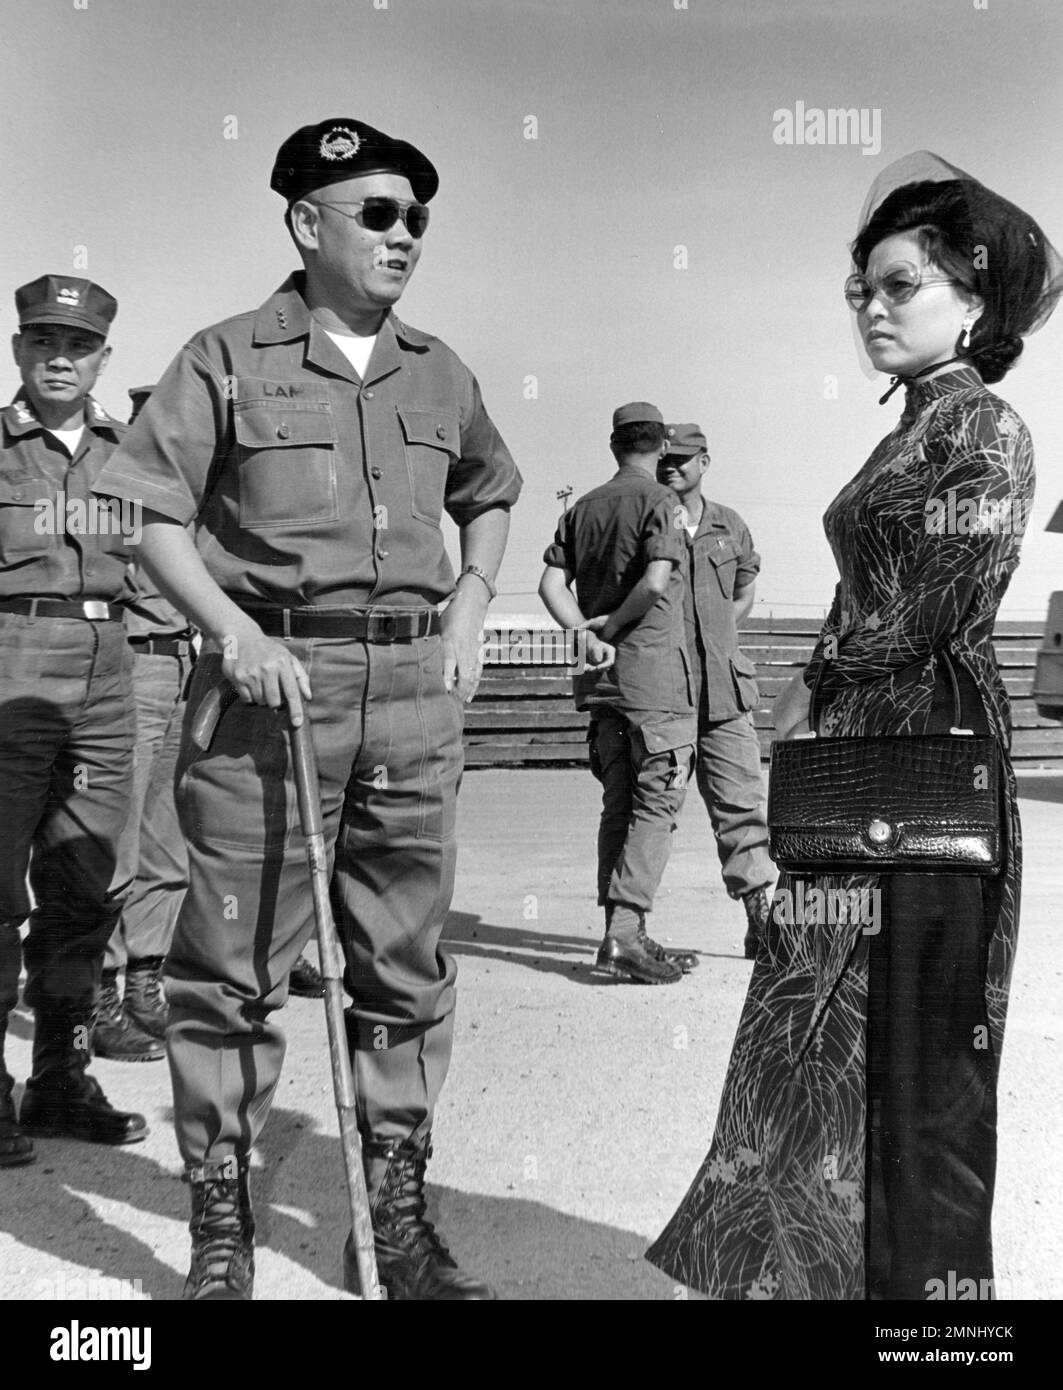 18-0197-029print 8x10 b&w [Naval Support Activity Hospital Danang, Vietnam]. Befehlshaber der ARVN-Streitkräfte, erster Korps, General Lam und Frau Lam, besuchen am 22. Dezember 1969 das NSA-Krankenhaus. Stockfoto